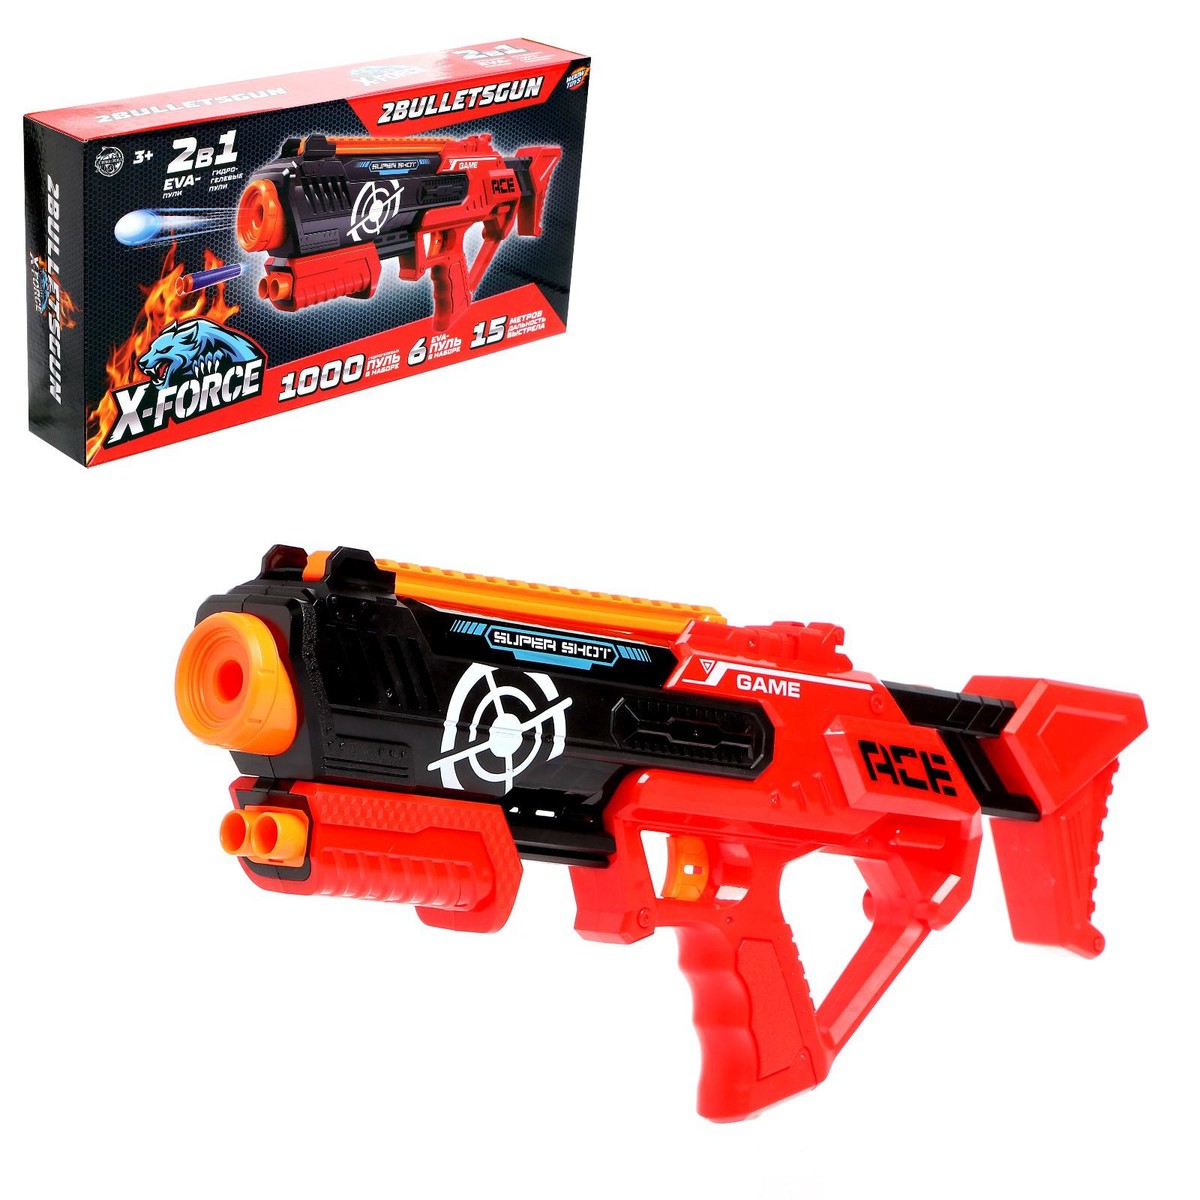 Бластер 2bulletsgun, стреляет мягкими и гелевыми пулями бластер supershoot gun стреляет мягкими пулями